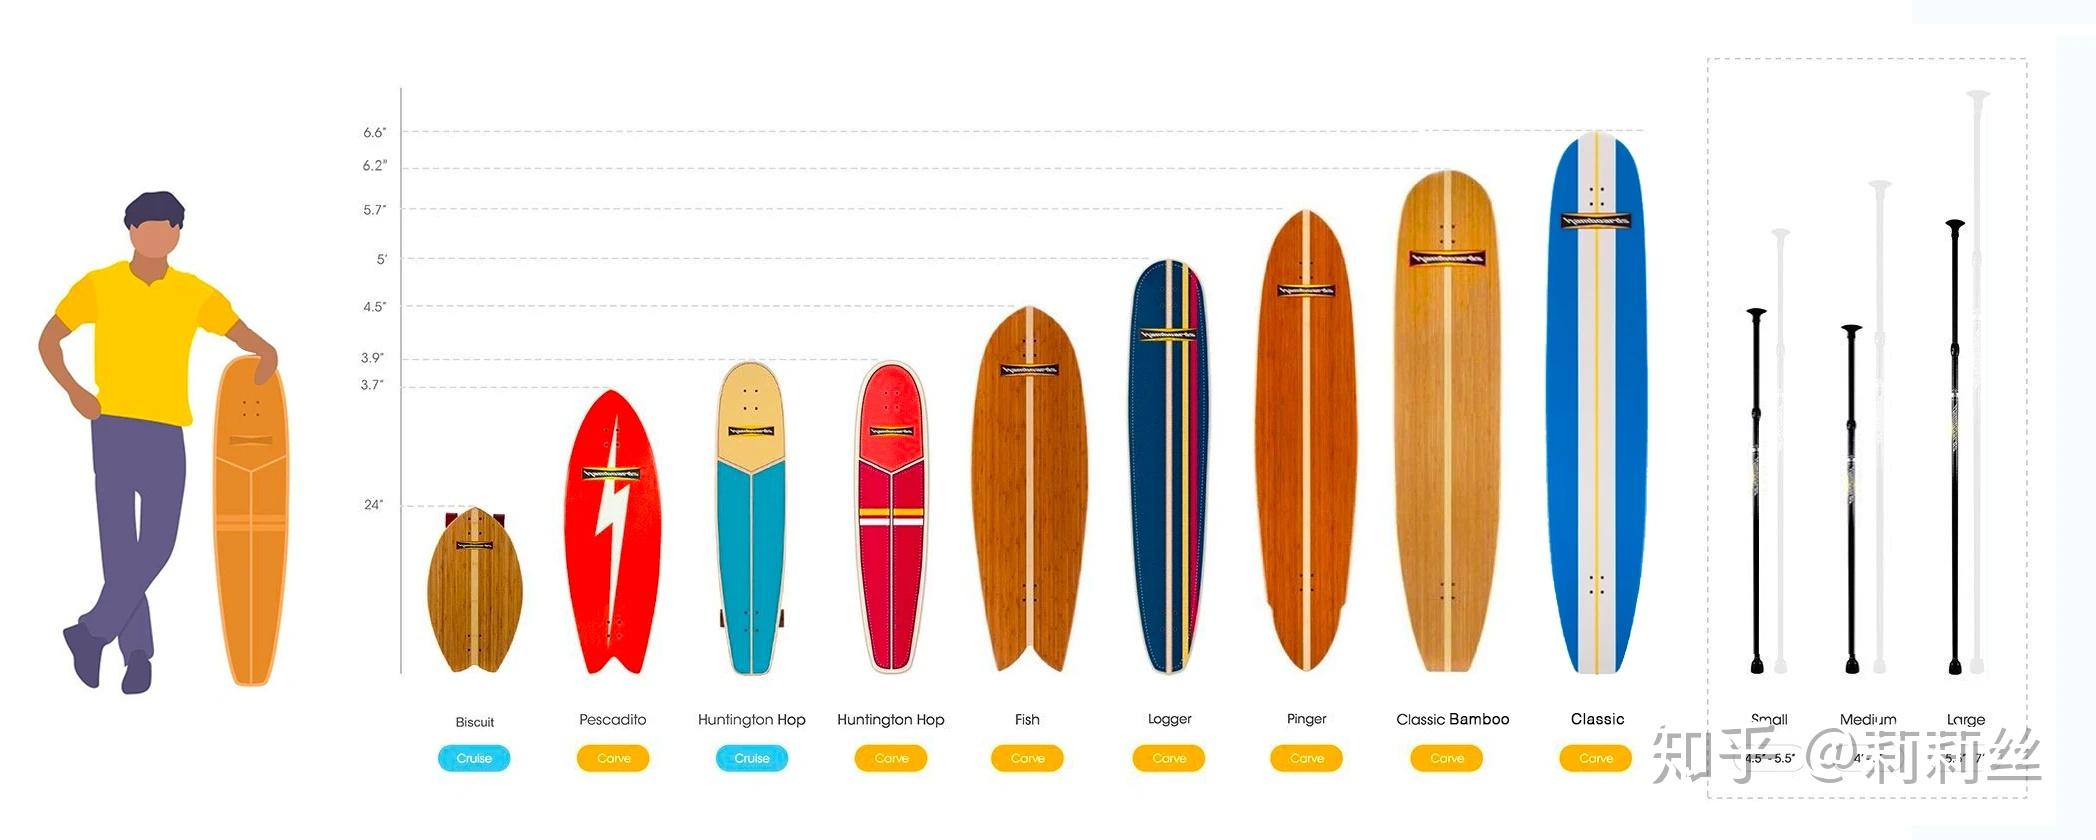 Smoothstar冲浪滑板扫盲！ SM陆地冲浪板介绍和简单对比说明（干货少） - 知乎